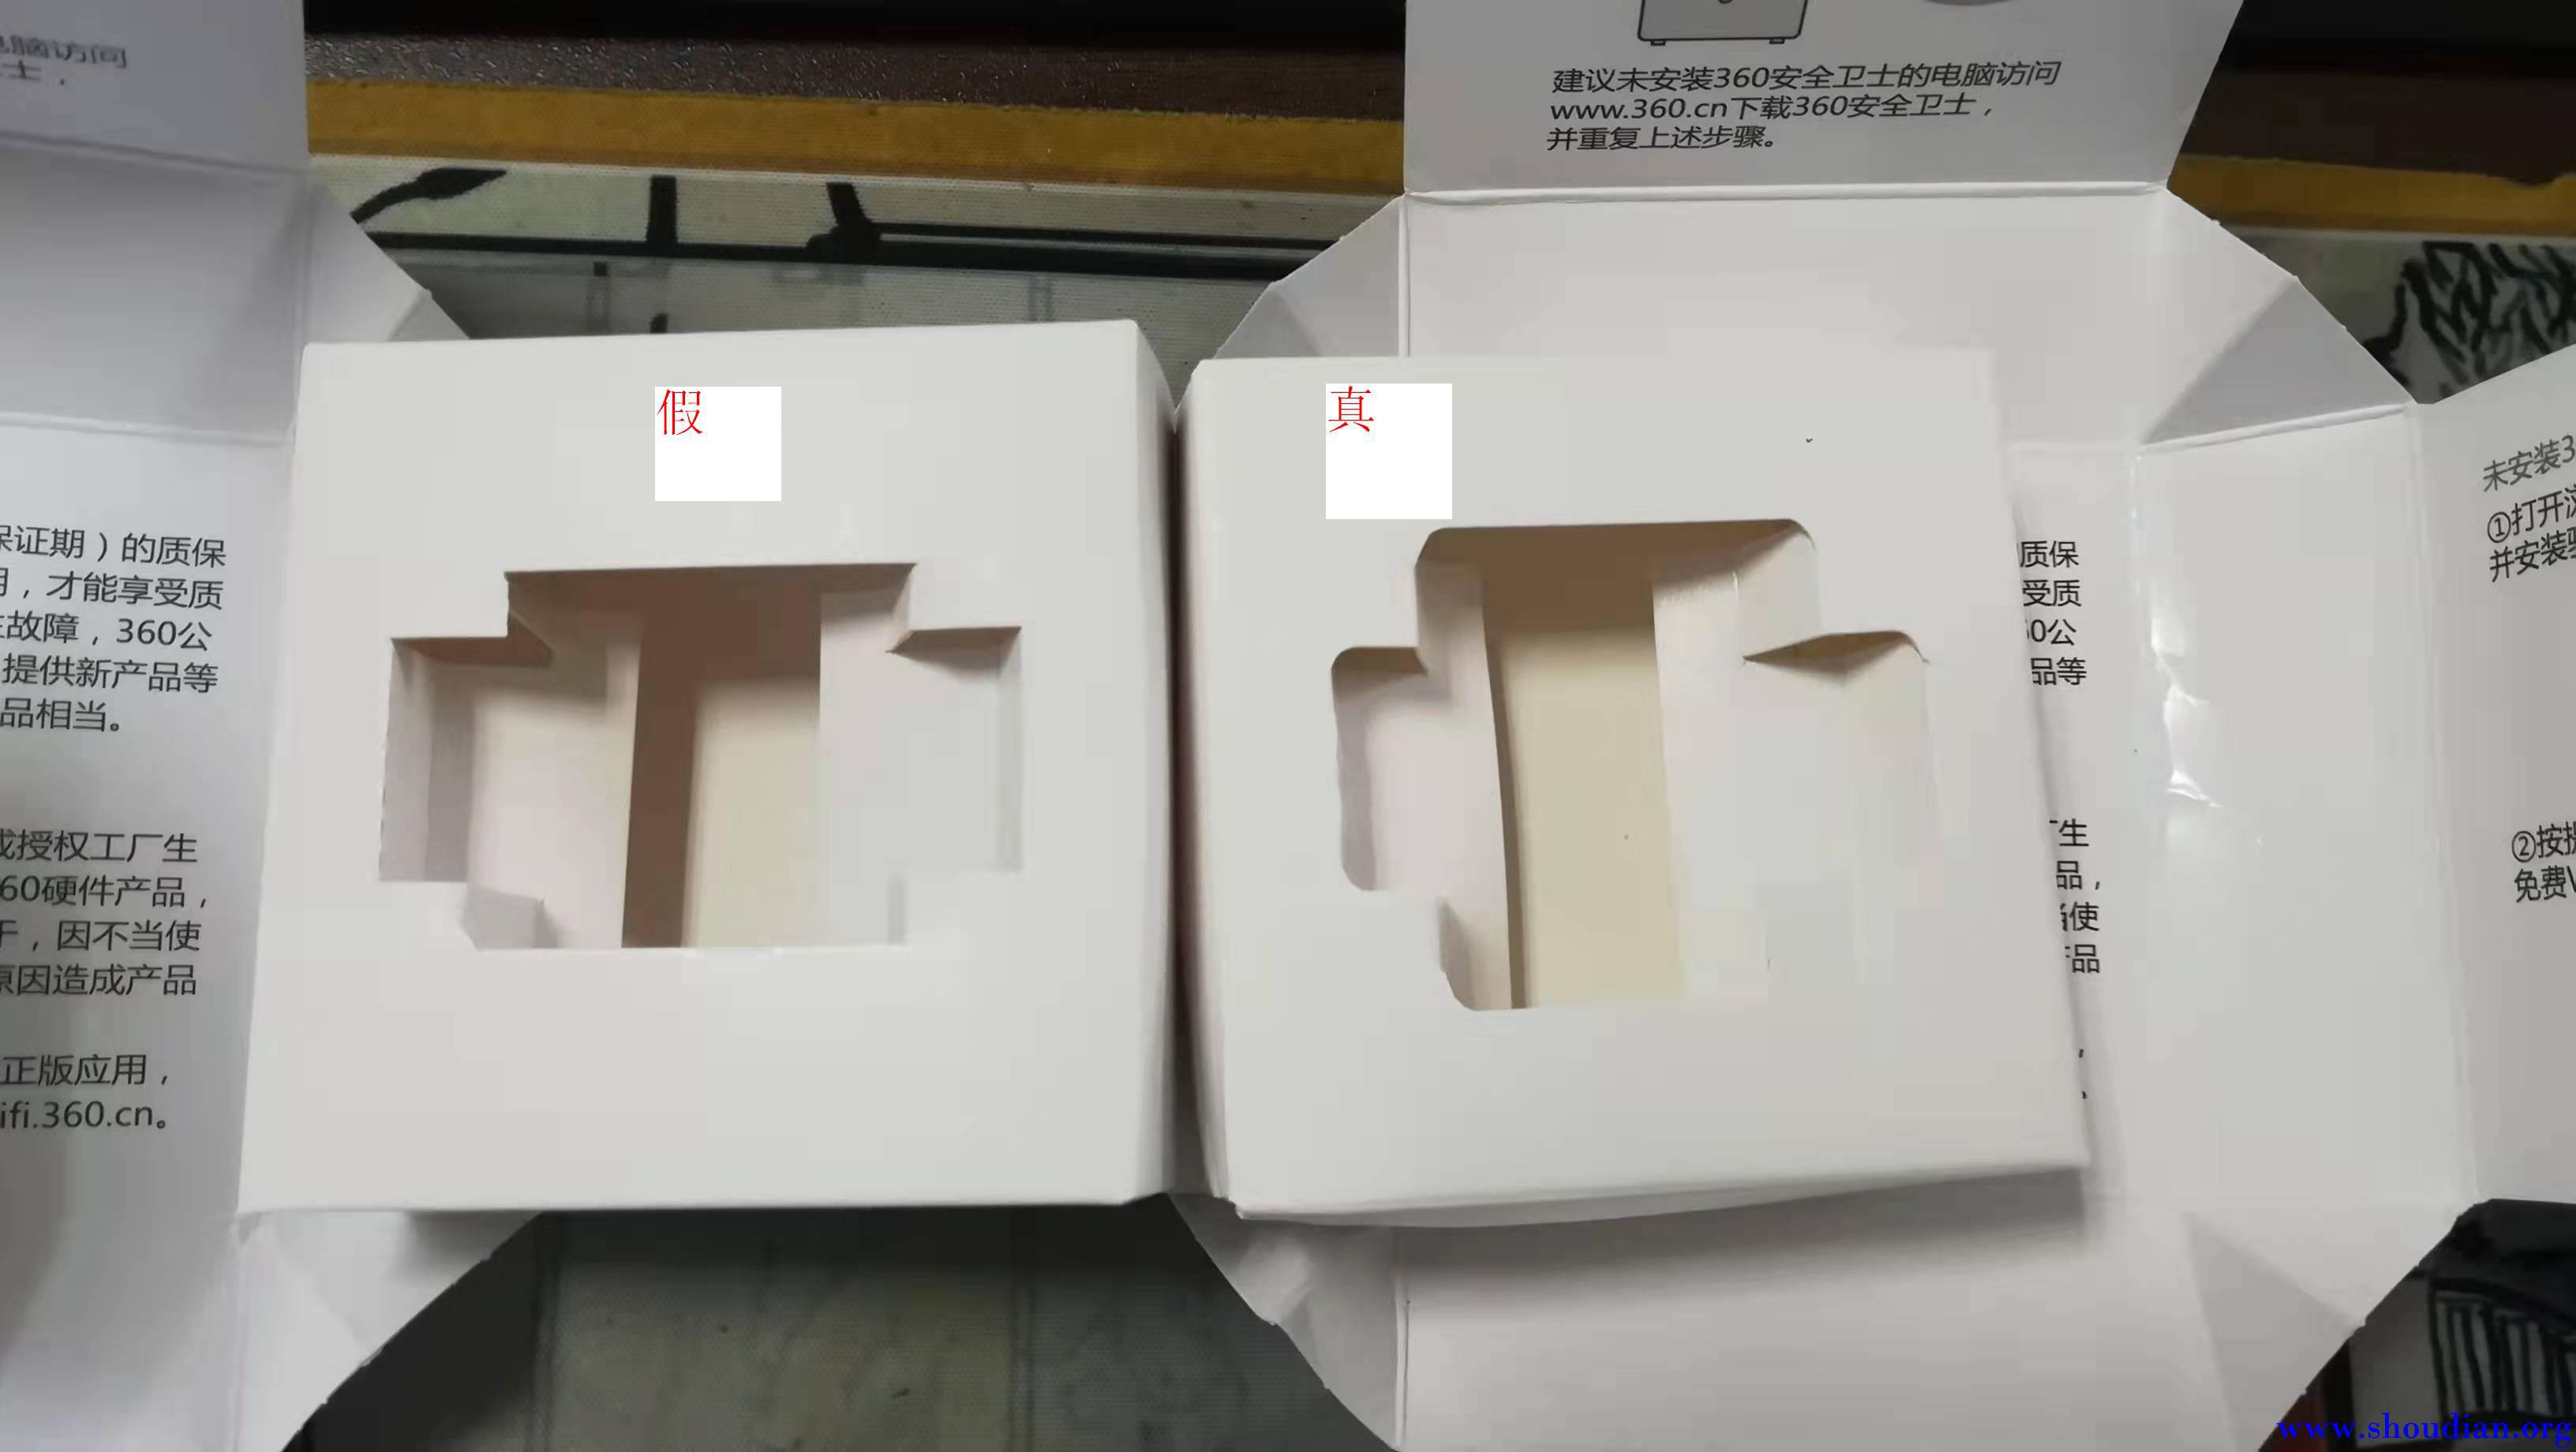 3假货的内衬盒纸比较薄软，且凹槽都是直角且有上下边比较窄。